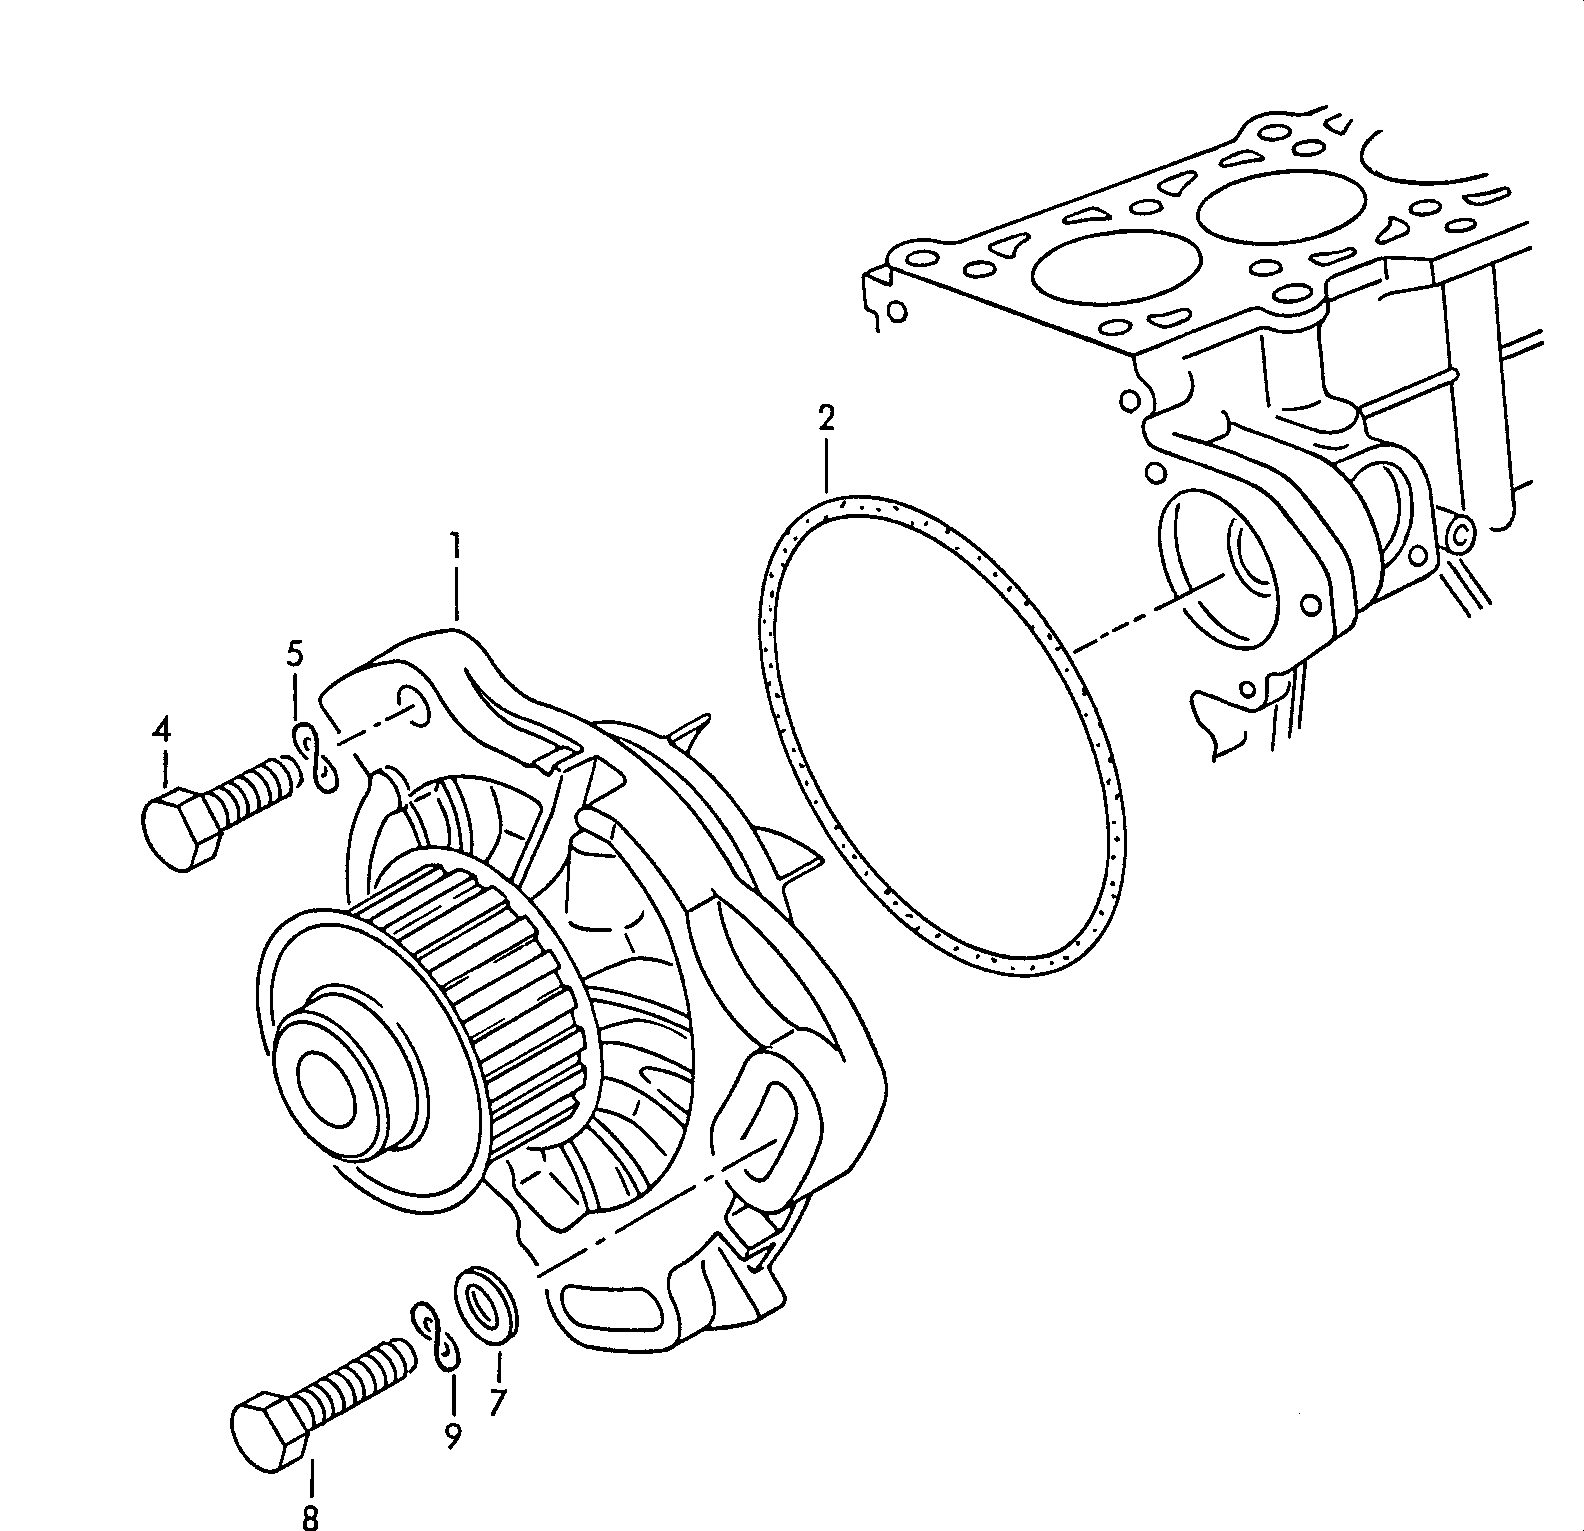 pompa liq. raff. 2,4l - Diesel-Industrie-Motore - imd